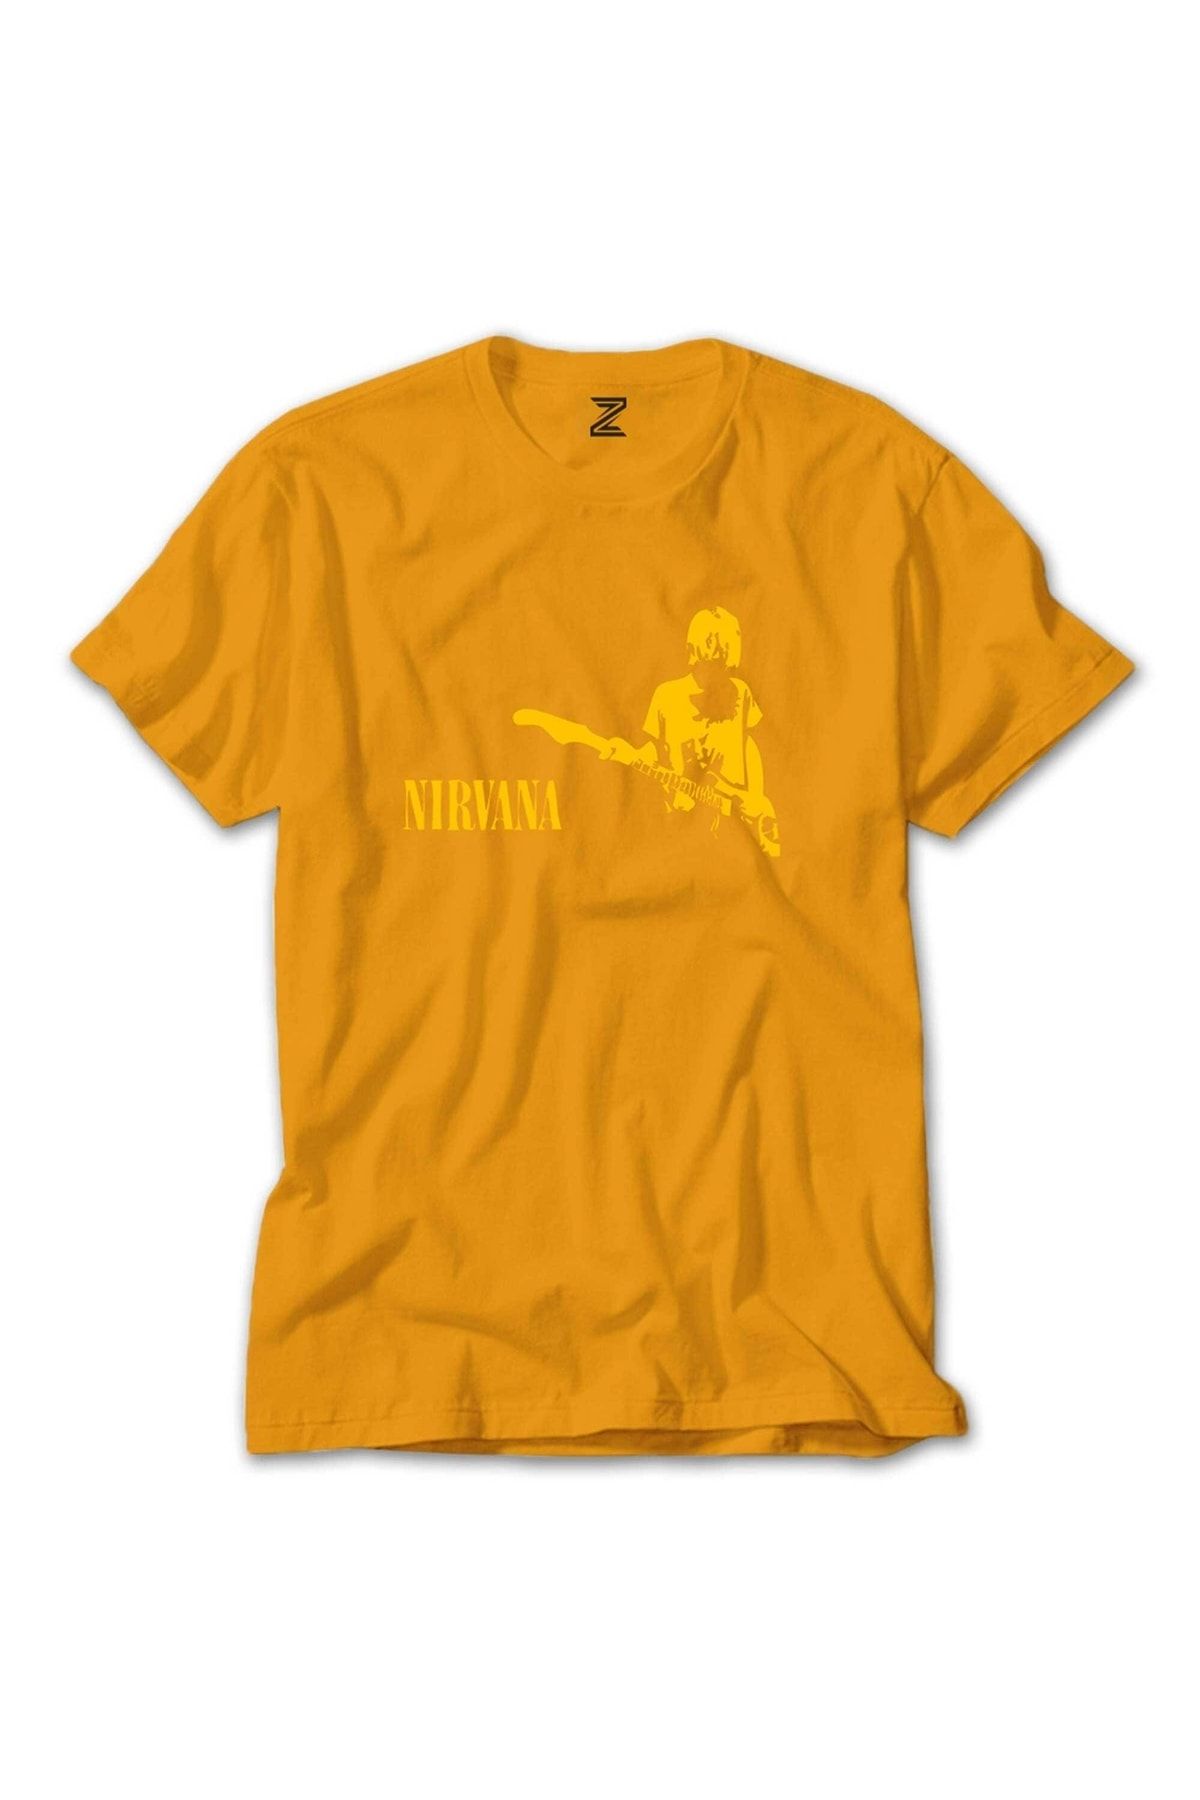 Z zepplin Nirvana Kurt Cobain Sarı Tişört